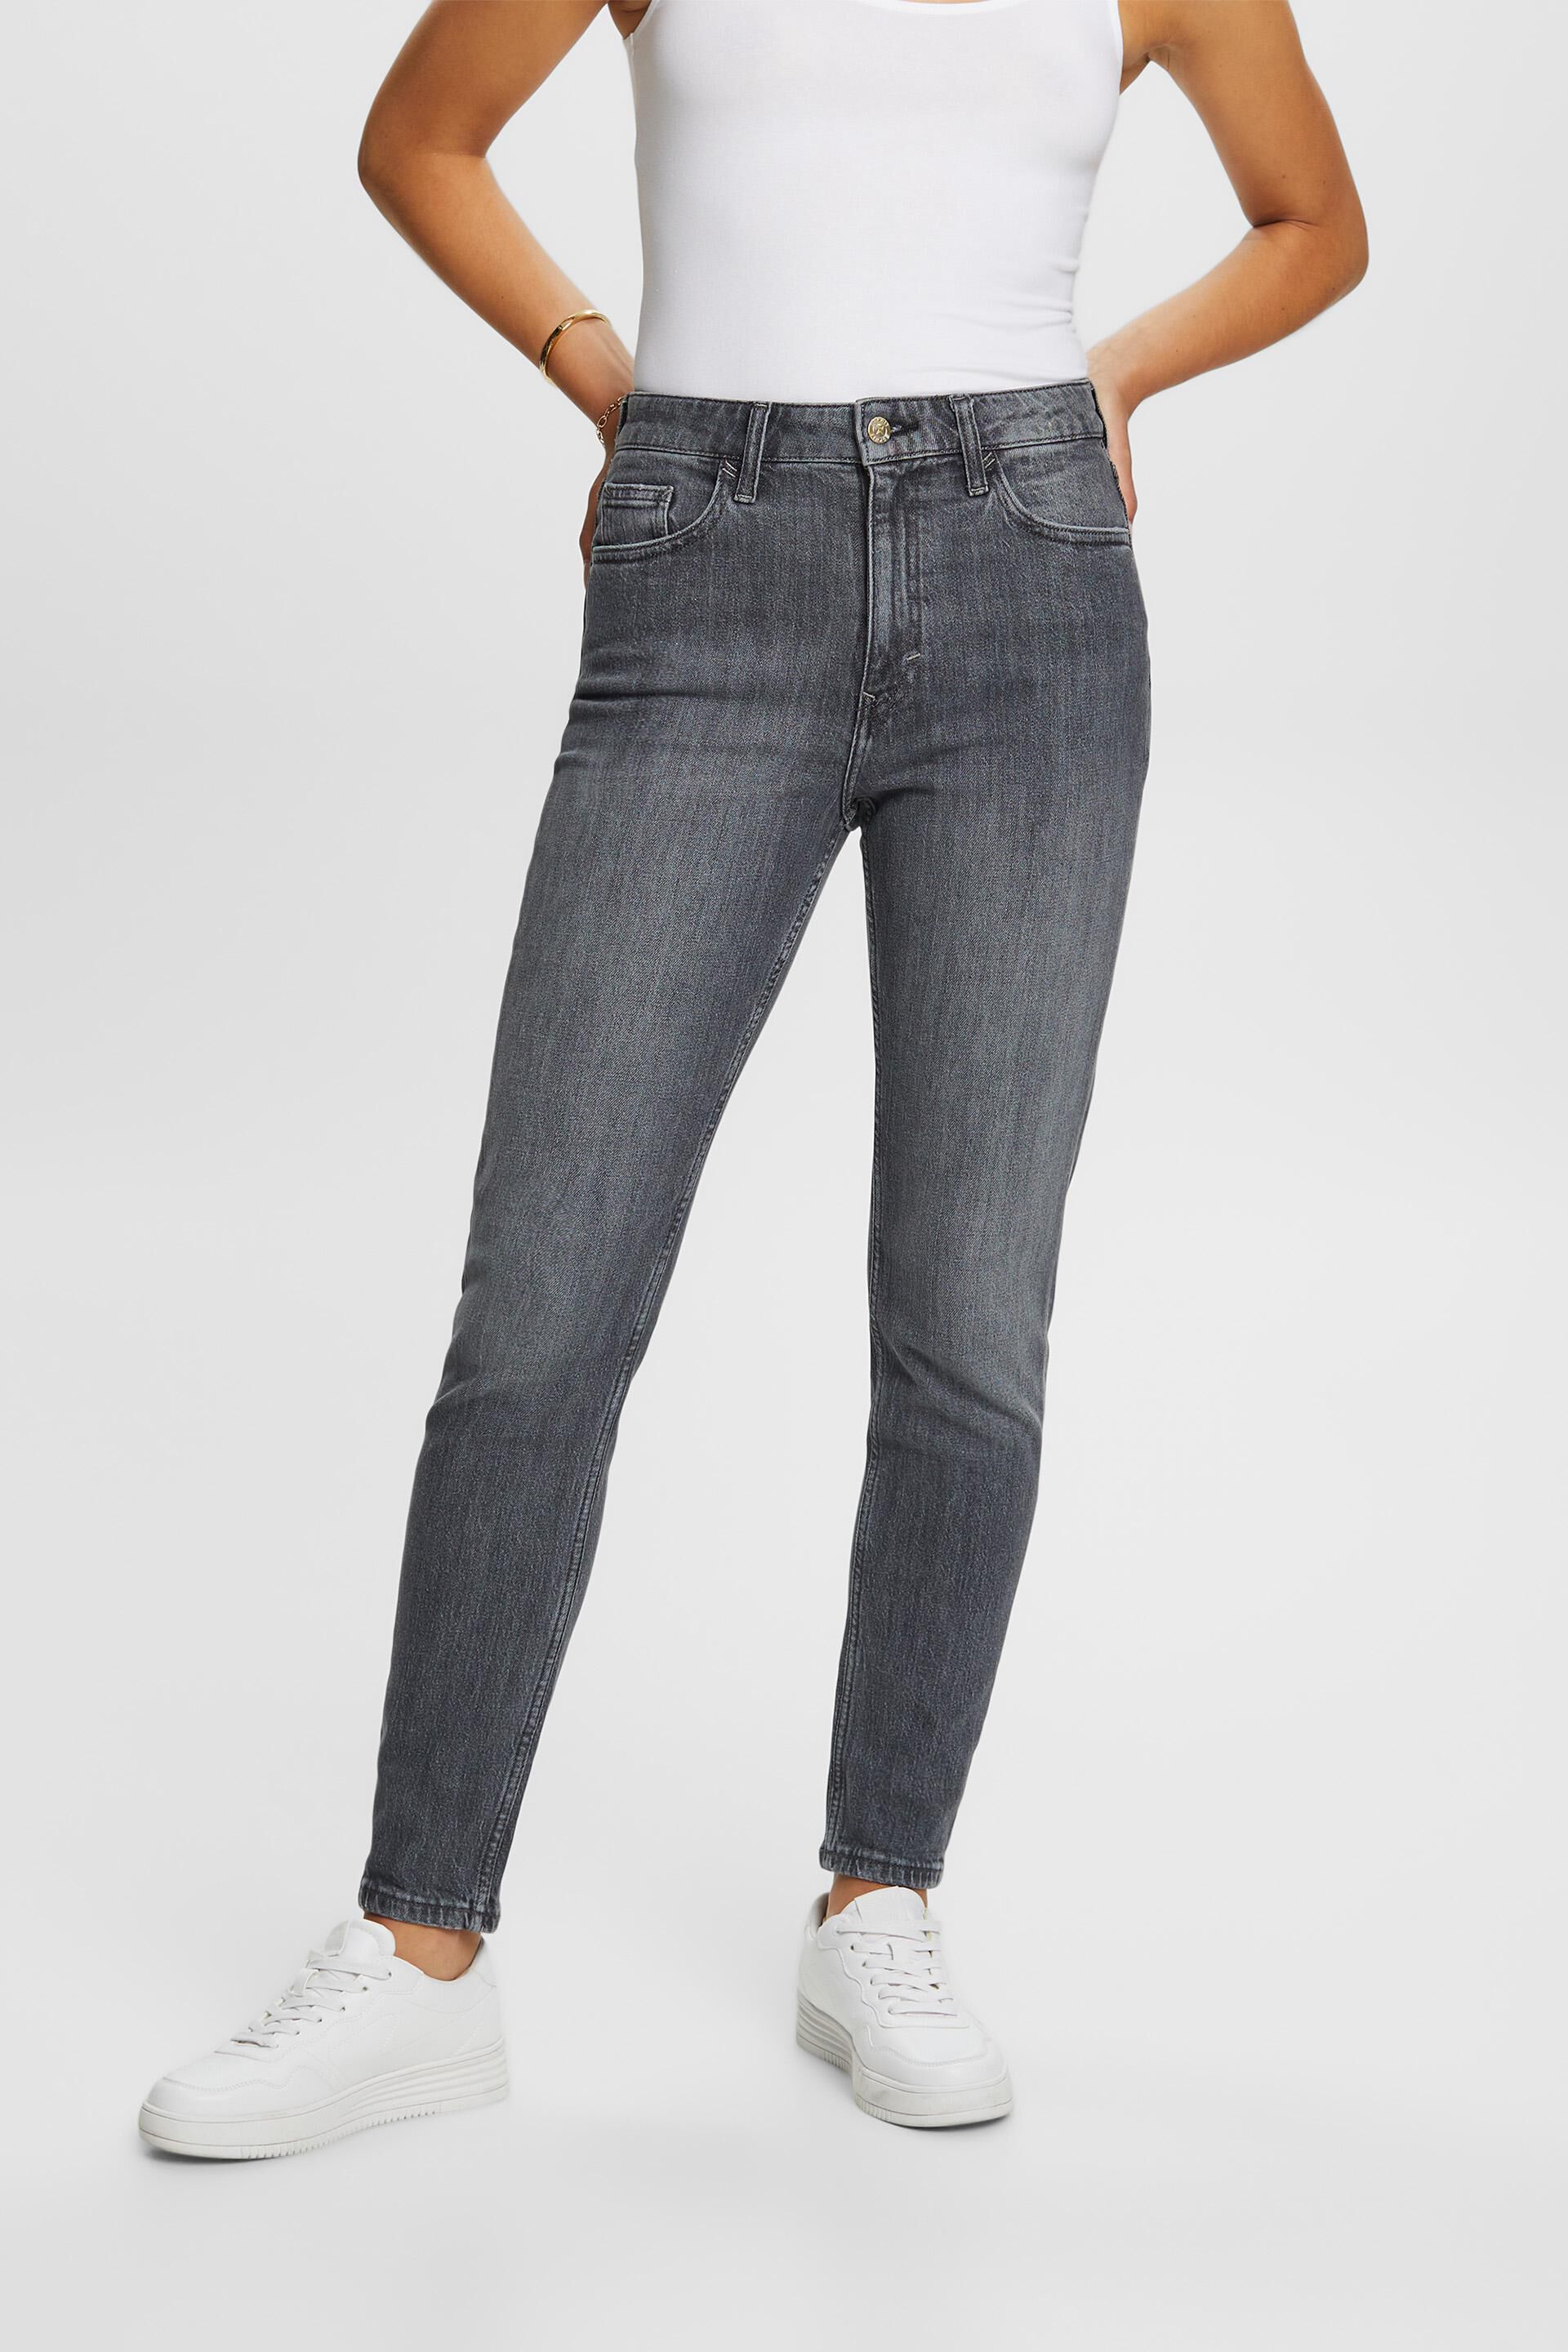 Klassische Retro-Jeans mit hohem Bund